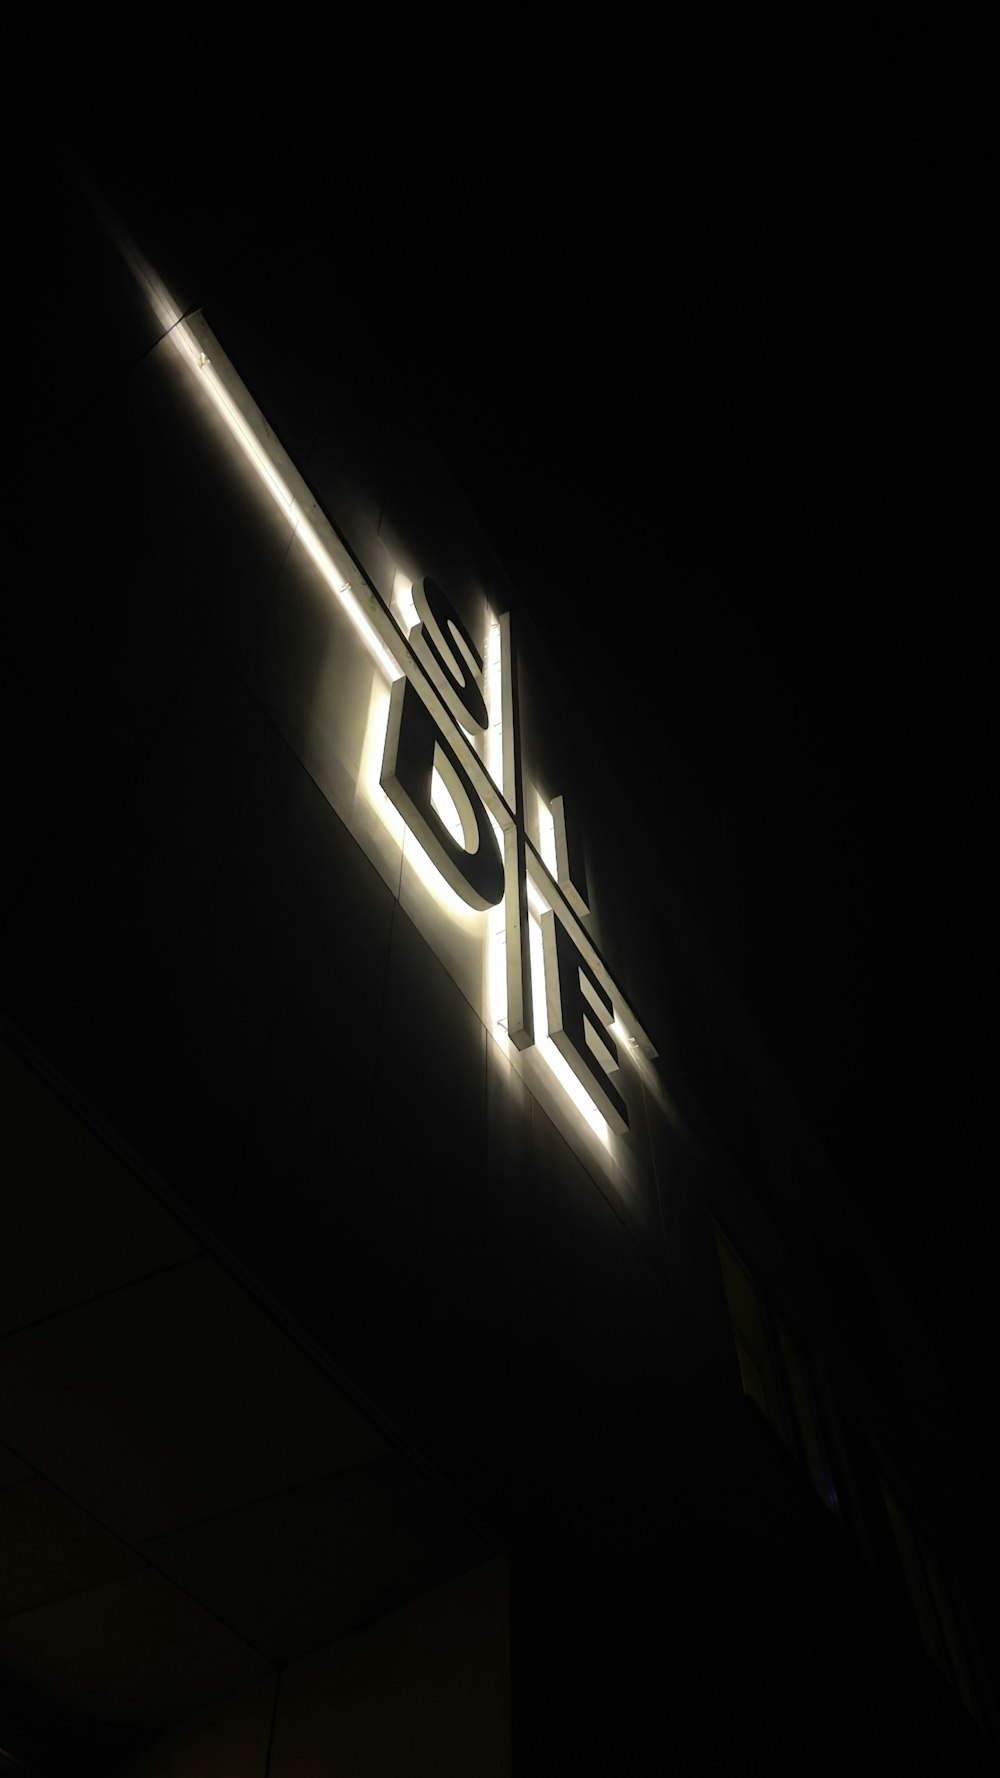 a close up of a lit up sign on the side of a building